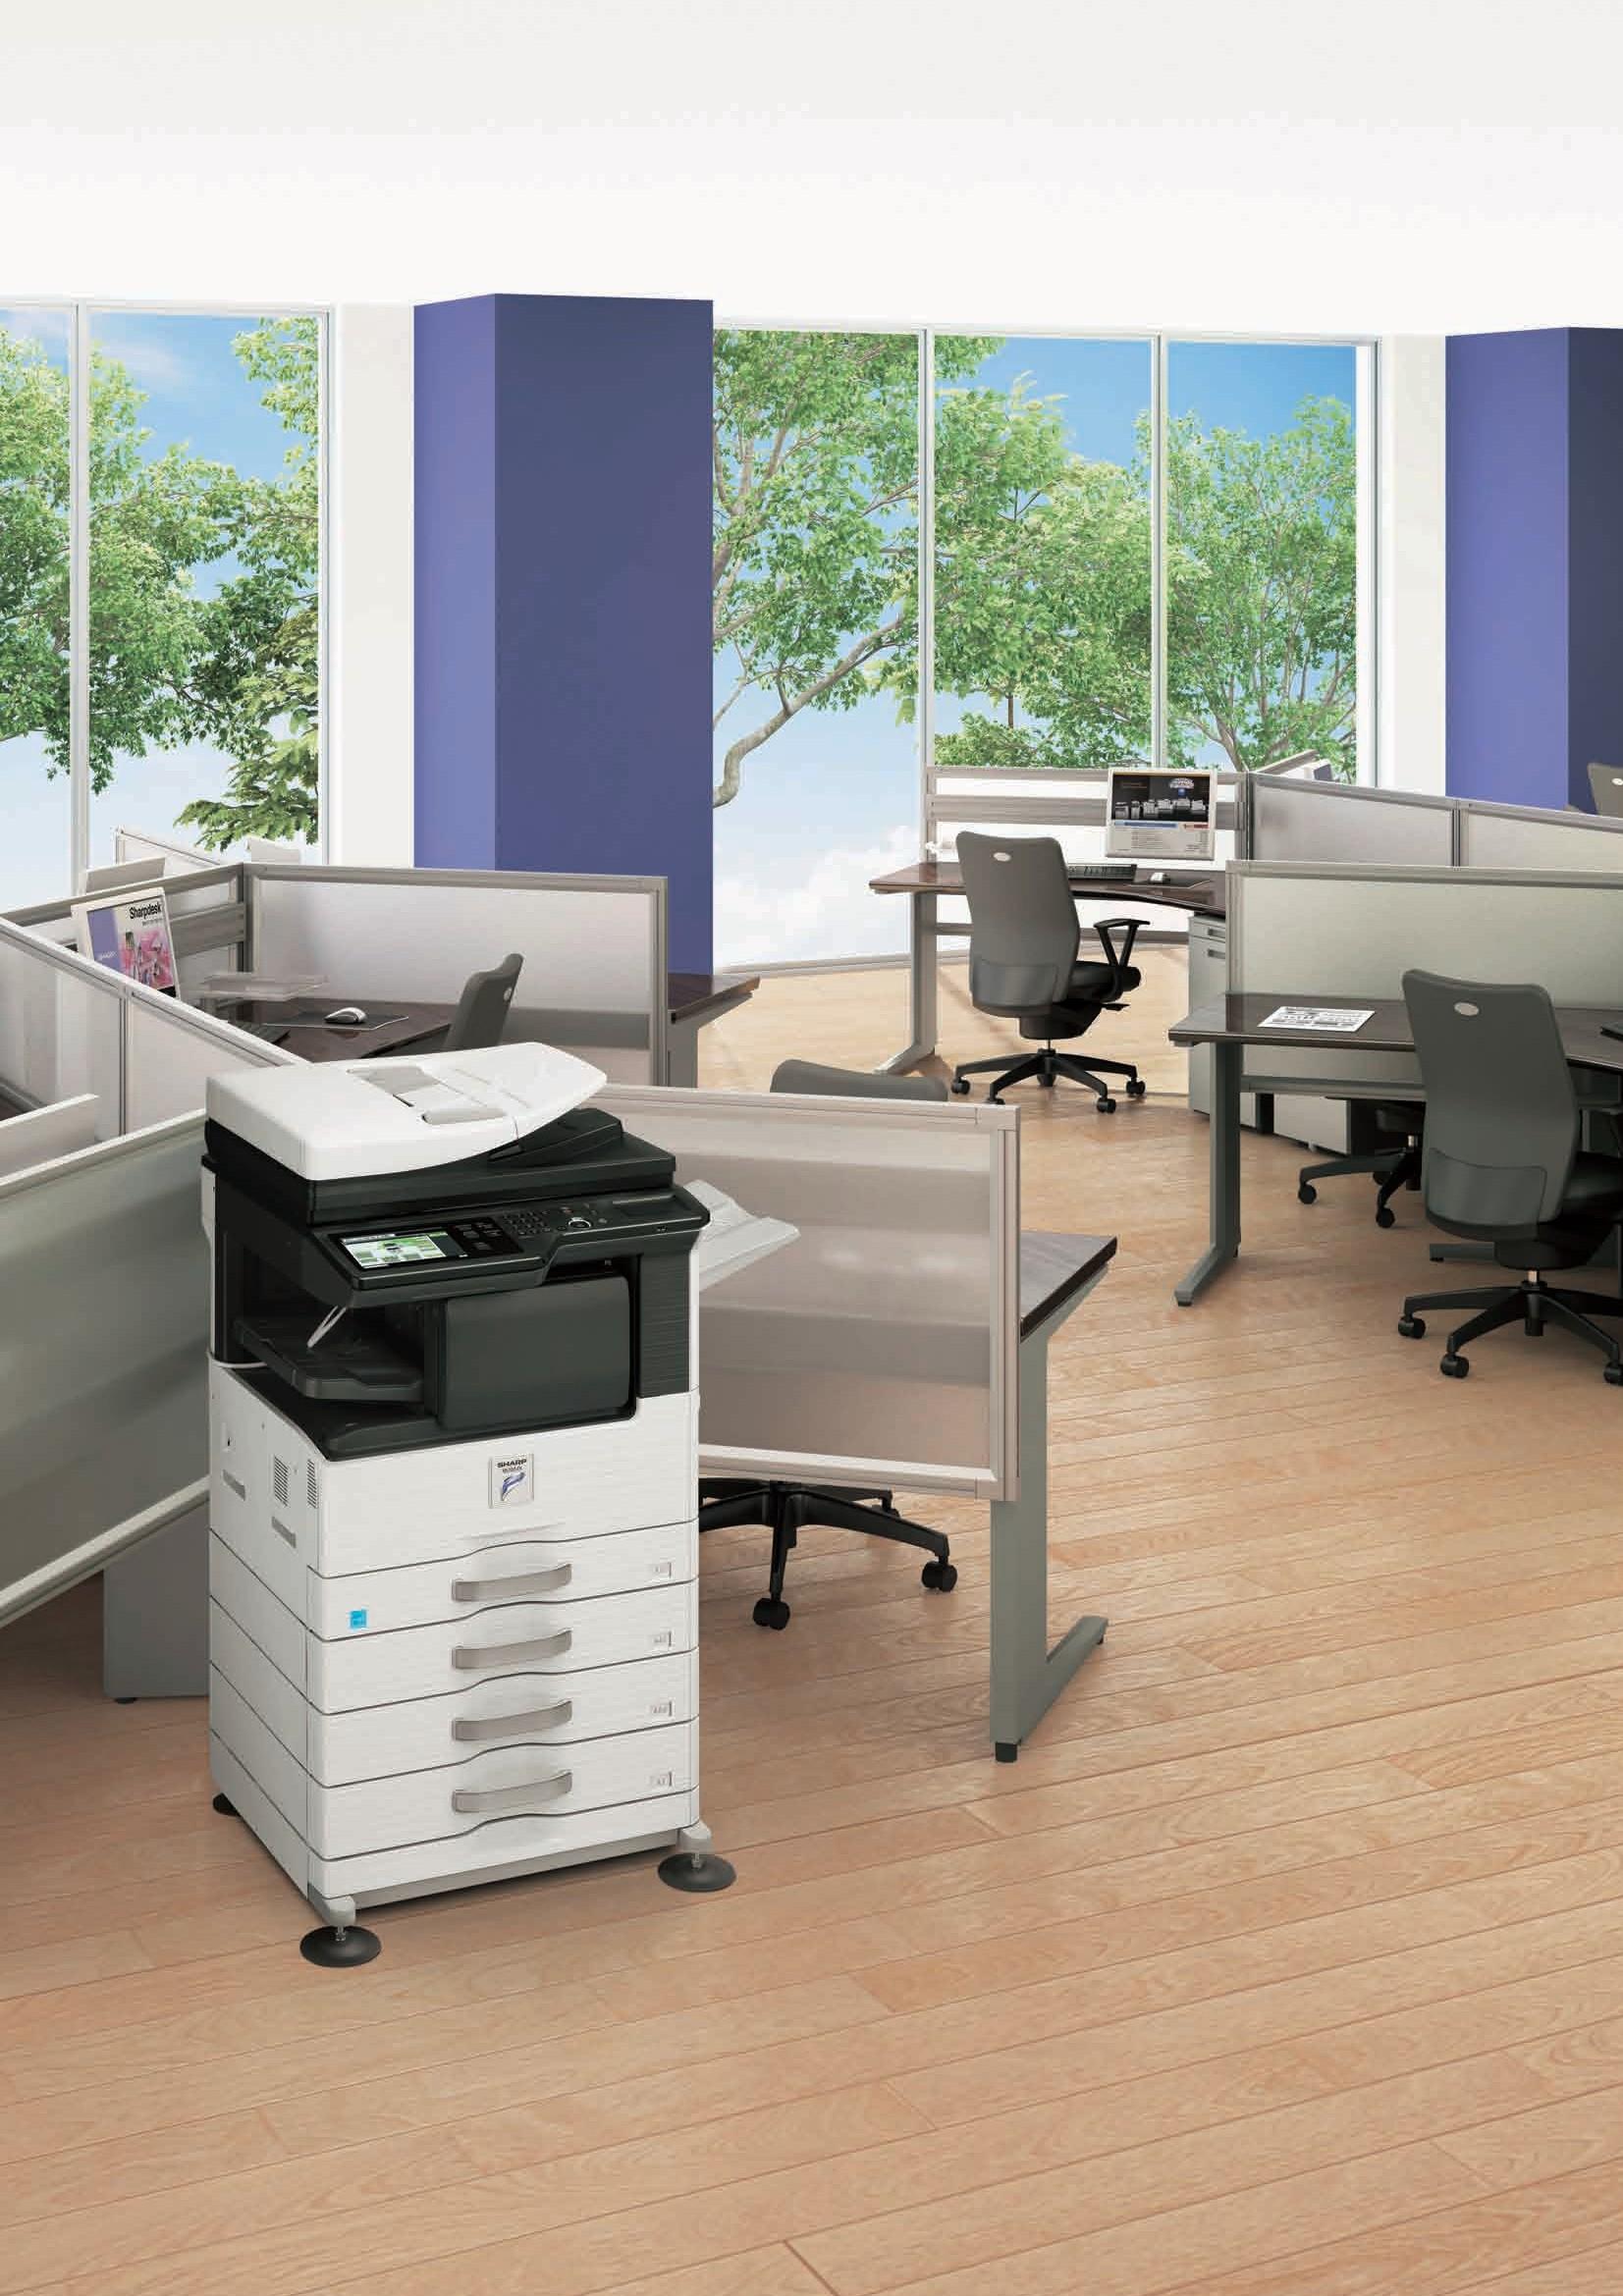 MX- M 3 5 4 N MX- M 3 1 4 N MX- M 2 6 4 N Sistemas multifuncionales digitales Mejore el trabajo en la oficina con este